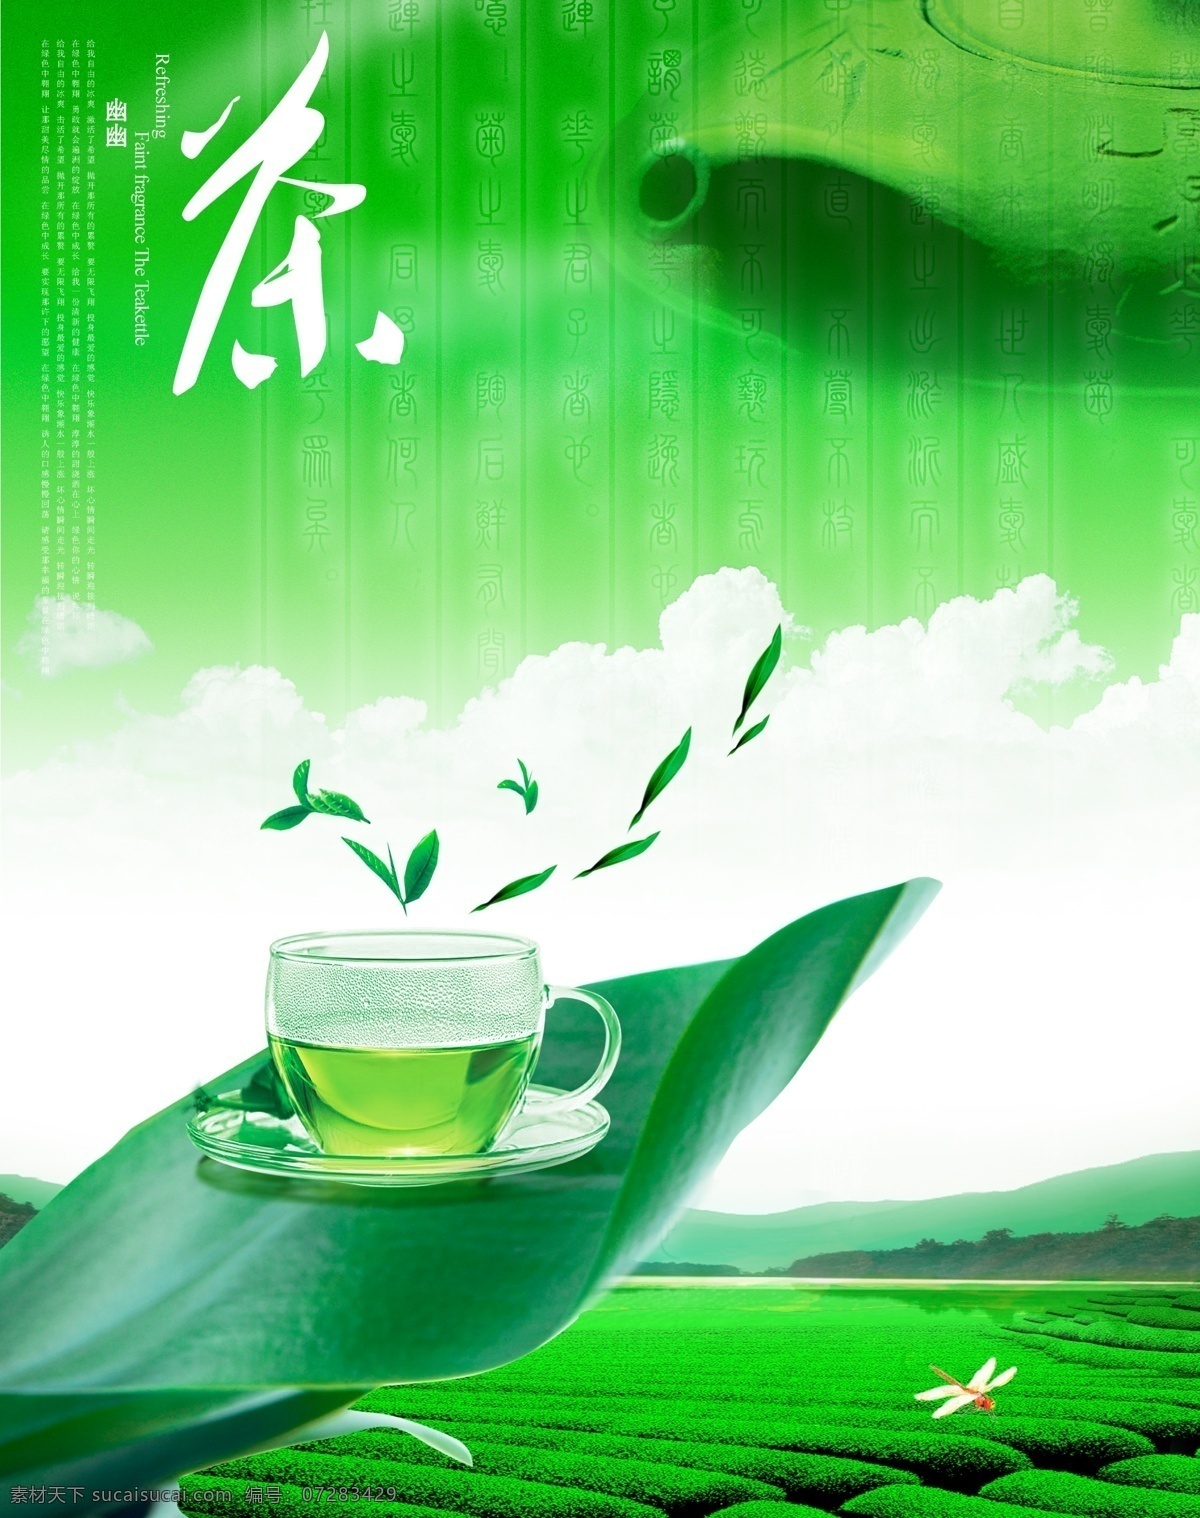 茶文化 宣传海报 茶文化画册 中华茶文化 传统茶文化 片 茶文化海报 茶文化背景 茶文化模板 中国茶文化 茶文化广告 古典 茶养生 茶茶道 茶文化宣传 茶文化展板 分层 绿色